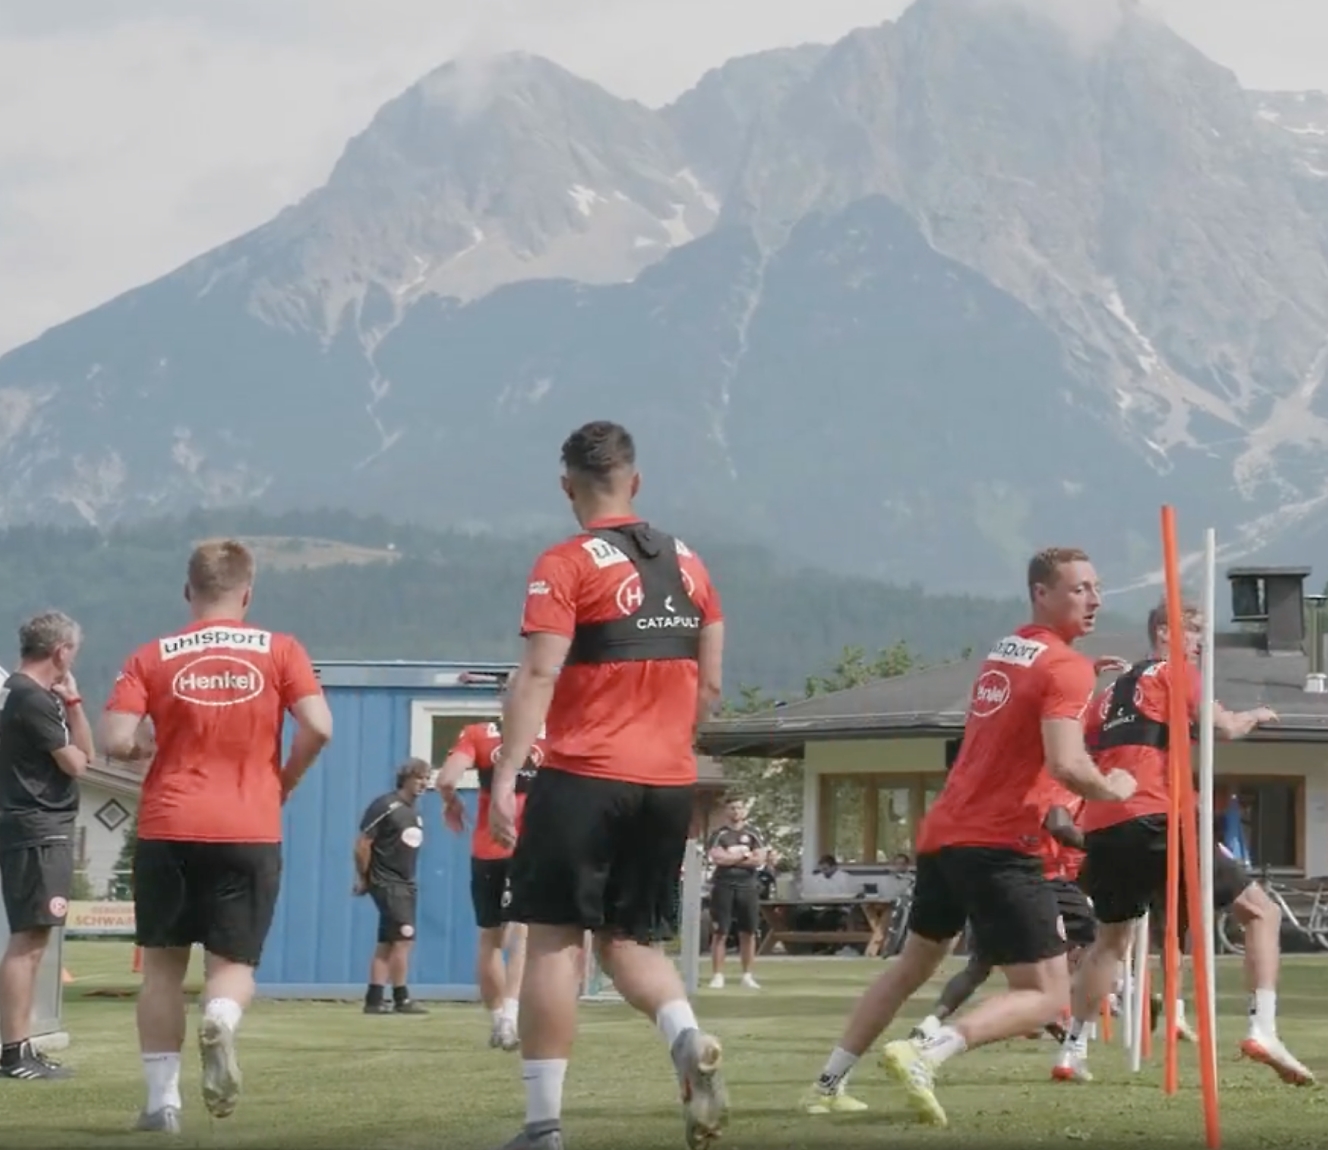 Παίκτες ποδοσφαίρου με κόκκινες φανέλες που εκπαιδεύουν σε εξωτερικούς χώρους με θέα στο βουνό στο παρασκήνιο.